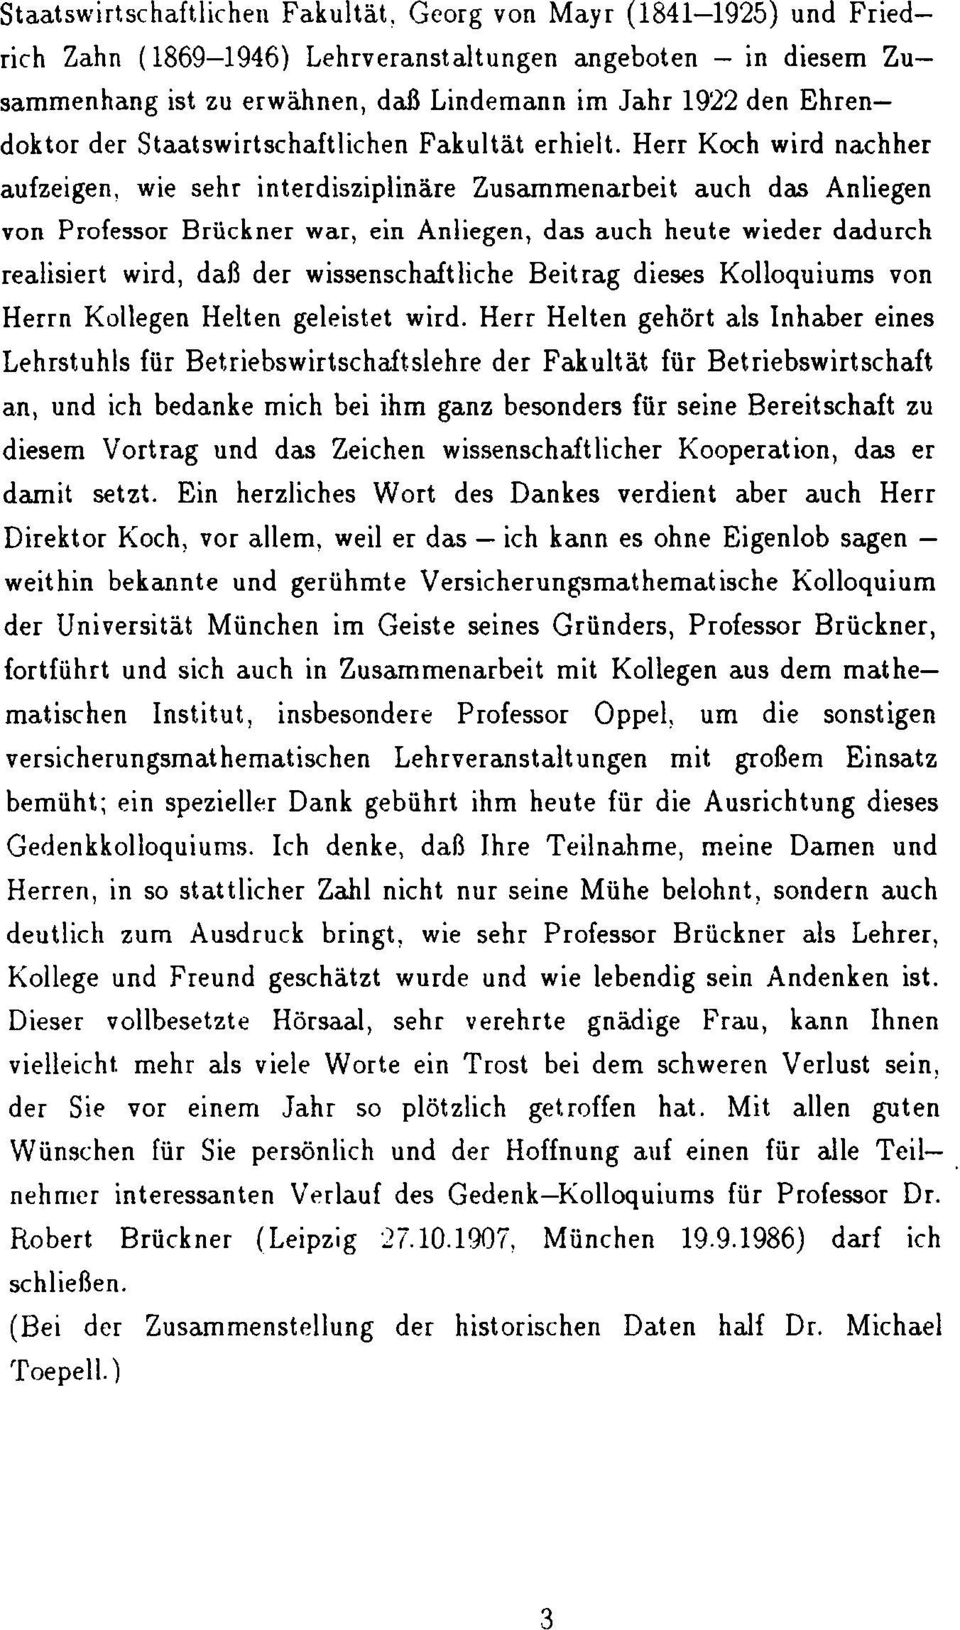 Herr Koch wird nachher aufzeigen, wie sehr interdisziplinäre Zusammenarbeit auch das Anliegen von Professor Brückner war, ein Anliegen, das auch heute wieder dadurch realisiert wird, daß der